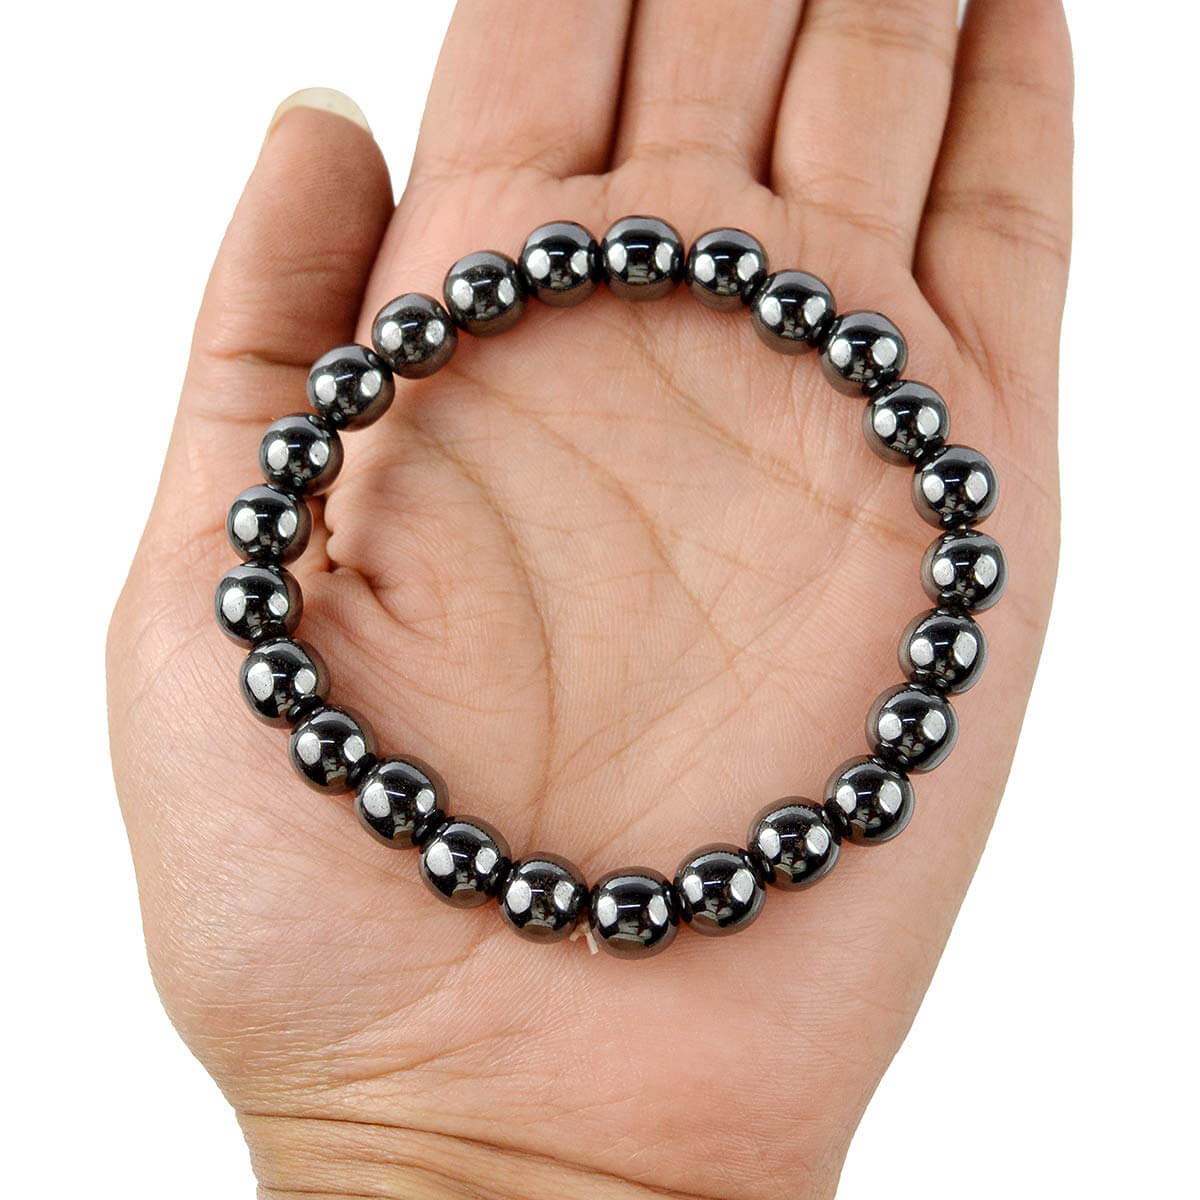 Hematite Crystal Bracelet for Reiki Healing 8 MM